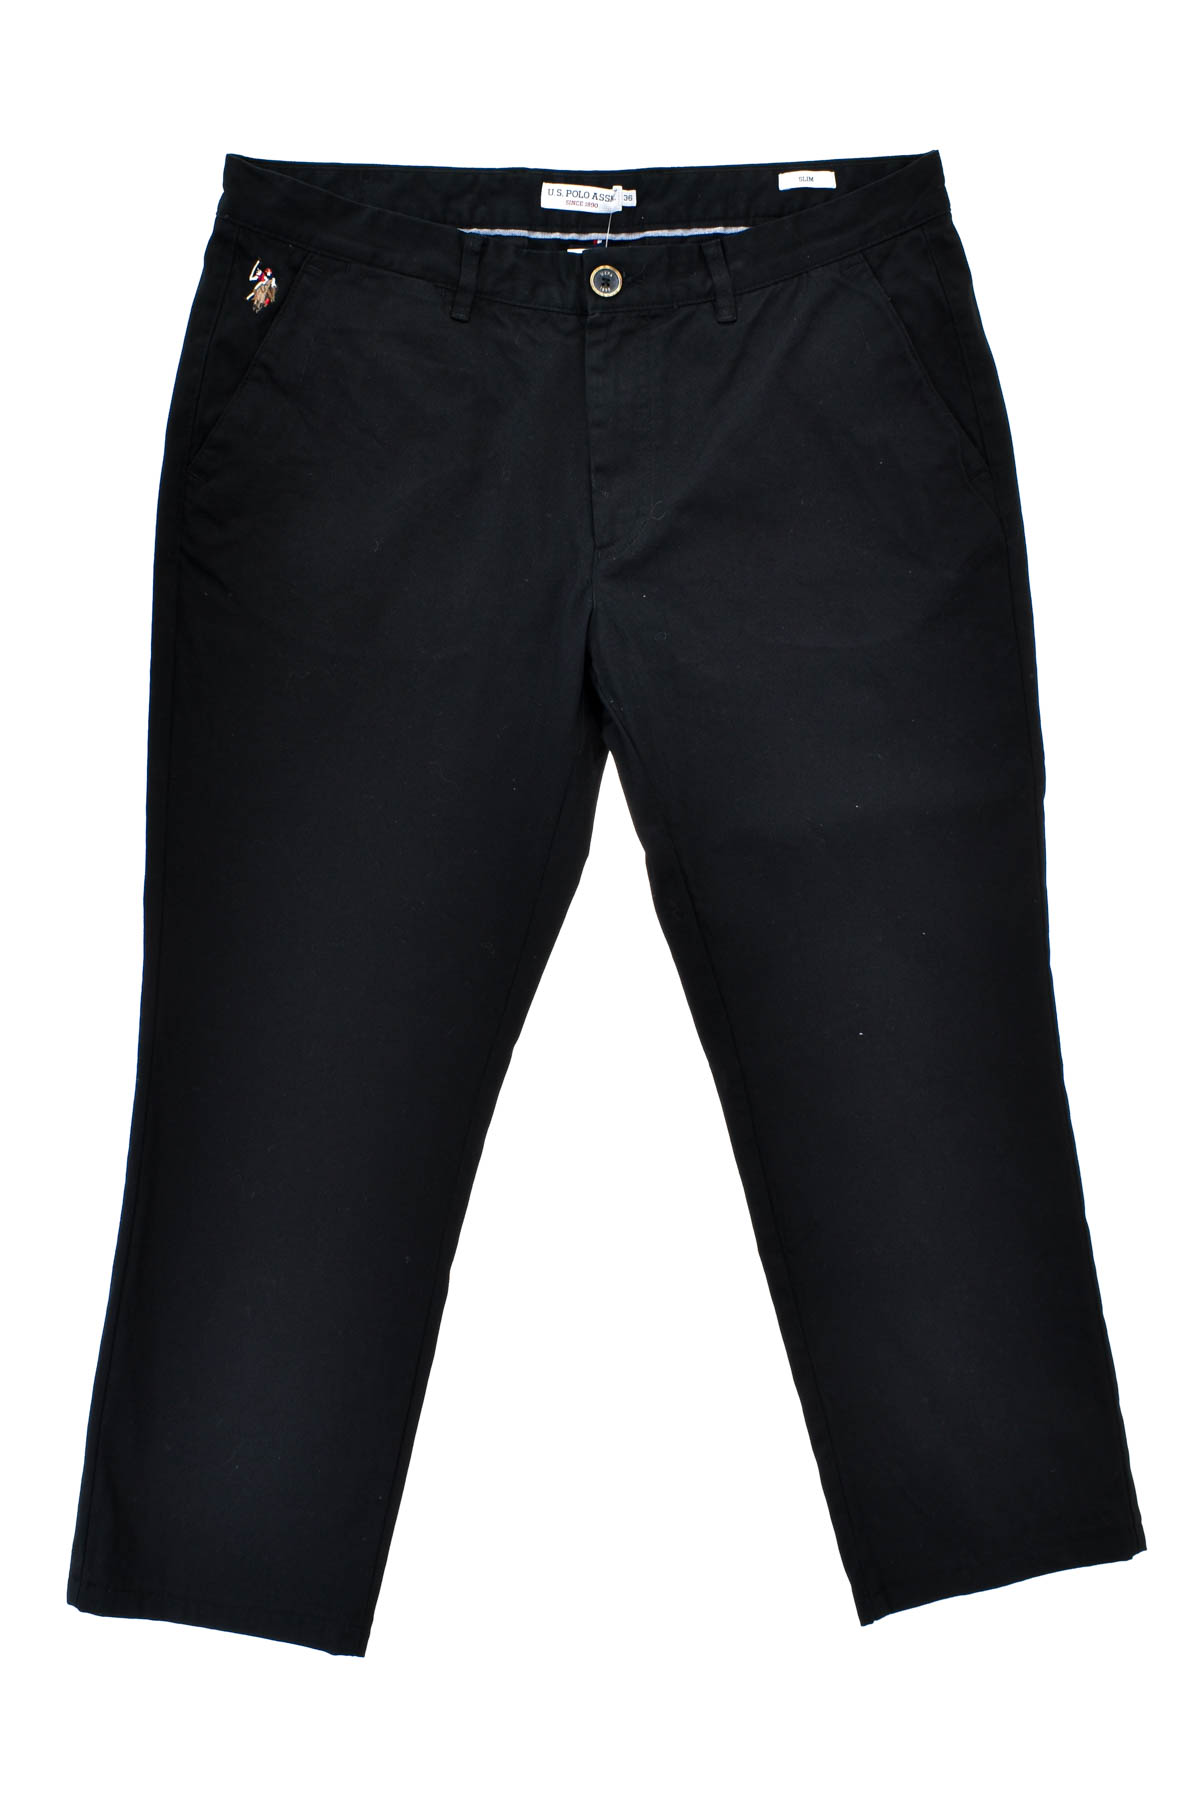 Pantalon pentru bărbați - U.S. Polo ASSN. - 0